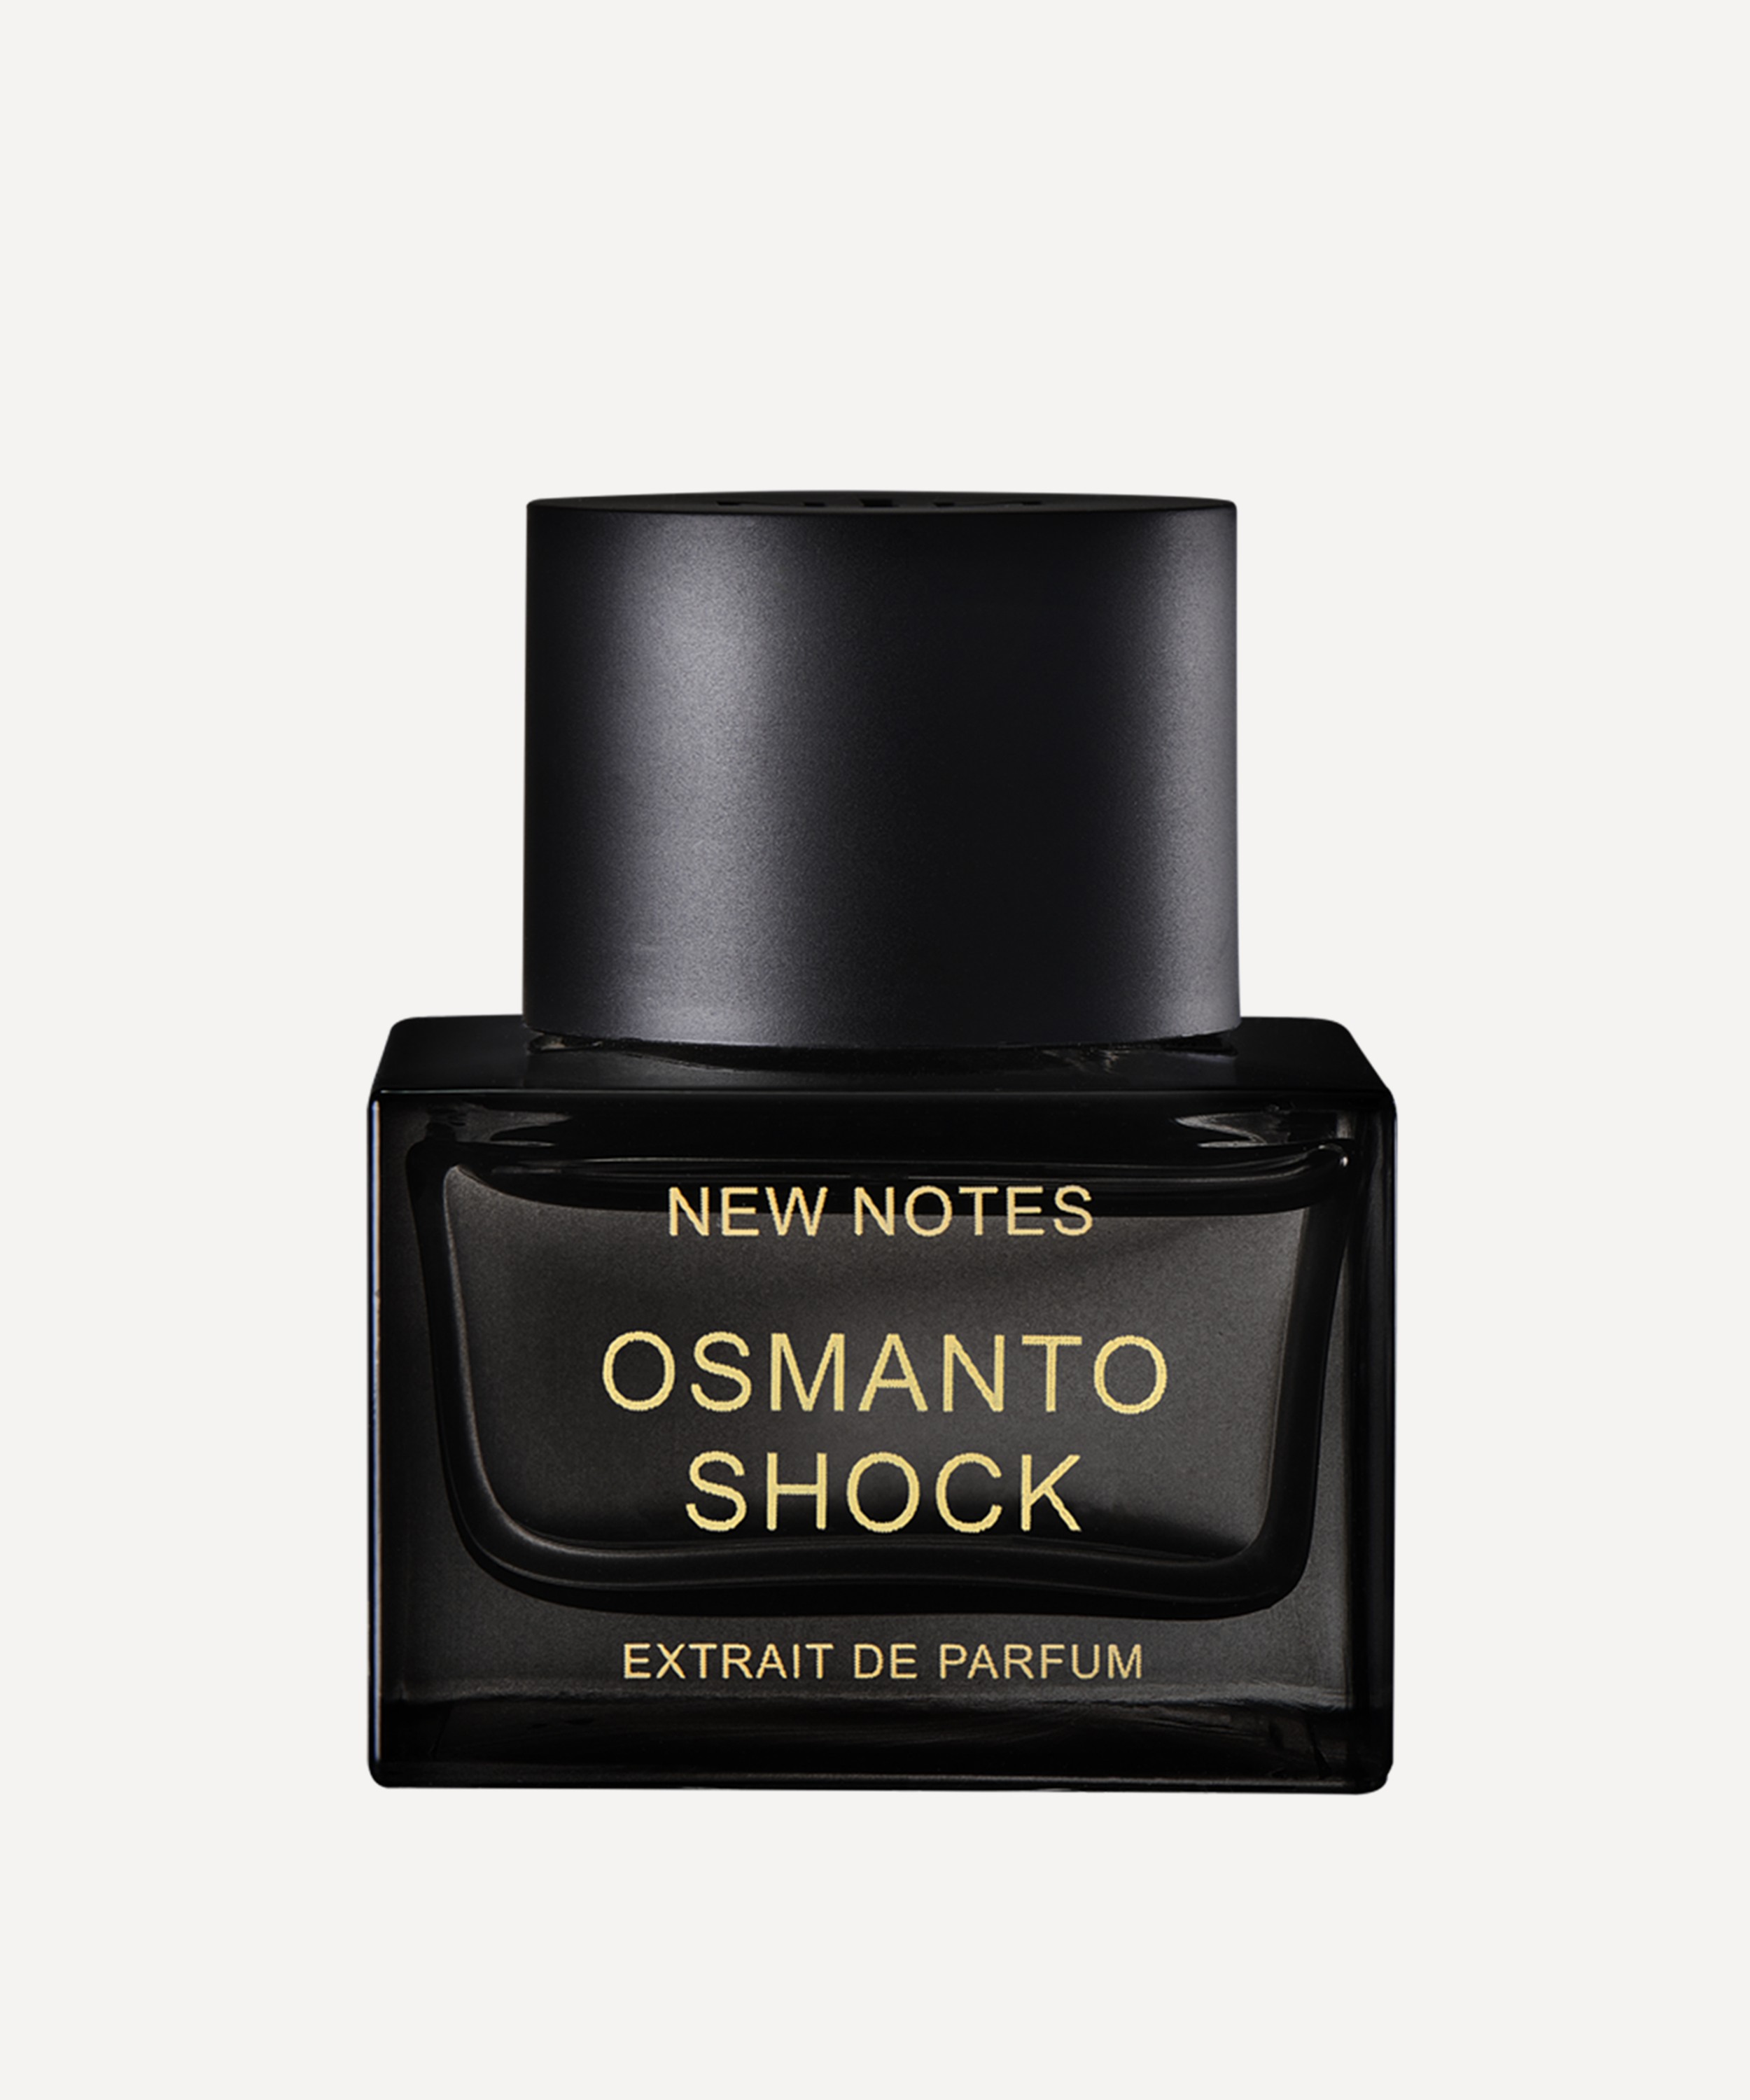 New Notes - Osmanto Shock Extrait de Parfum 50ml image number 0